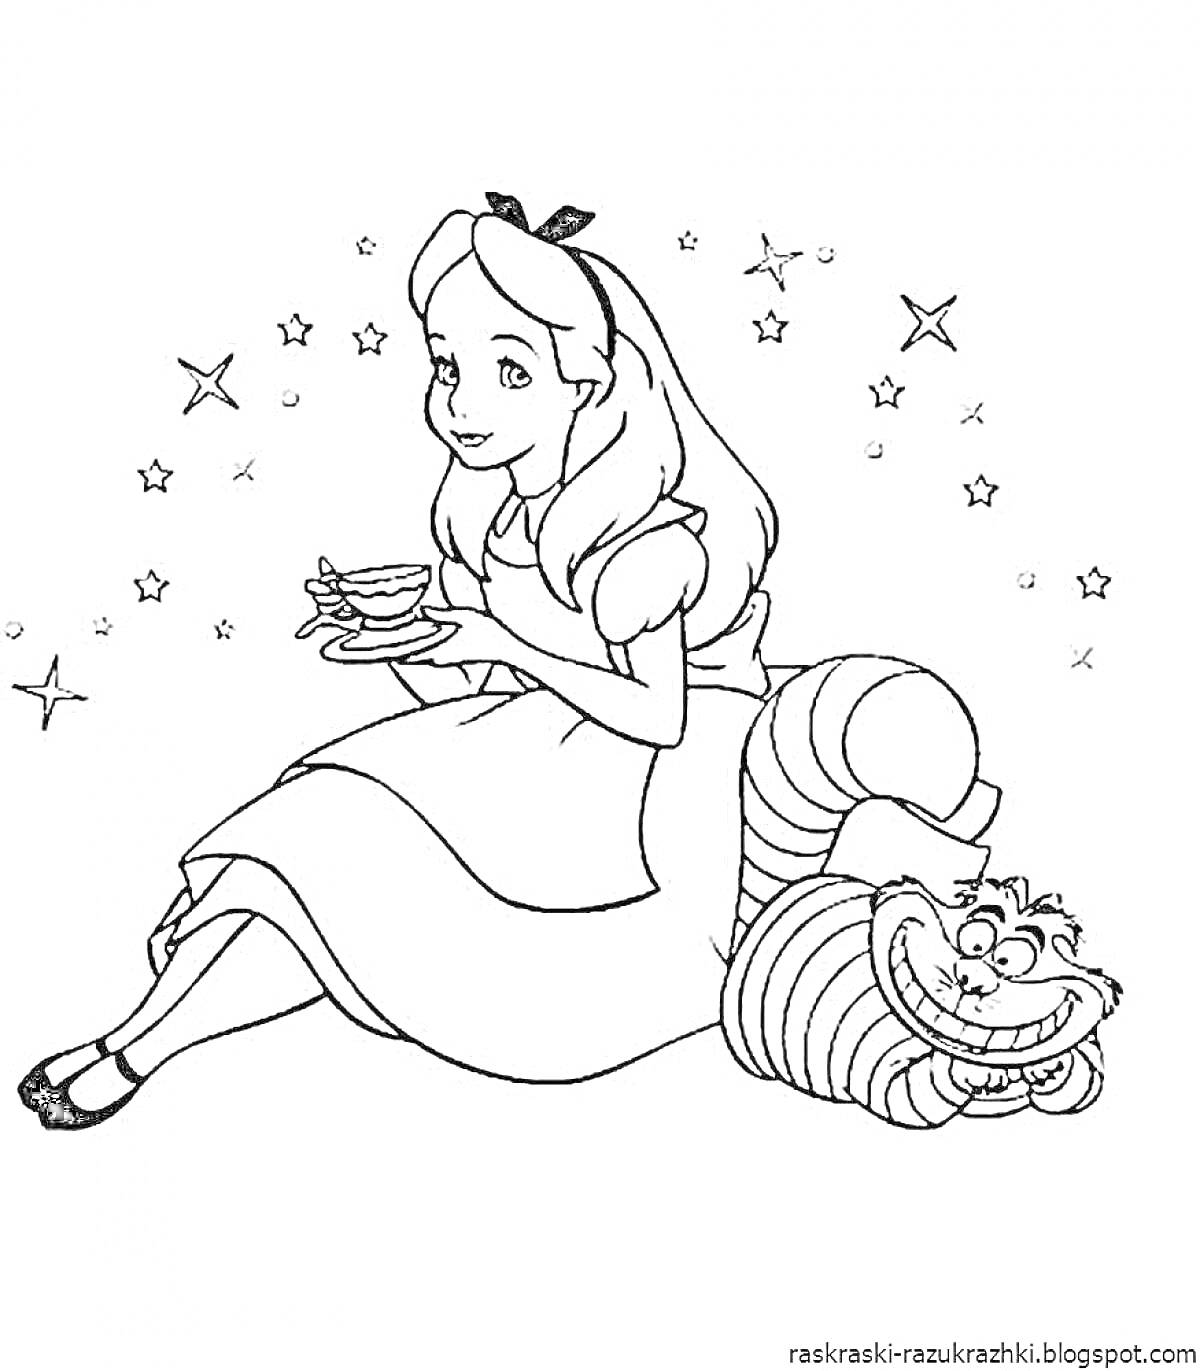 Раскраска Девочка с чашкой чая, сидящая на улыбающемся кошке, вокруг которой звезды